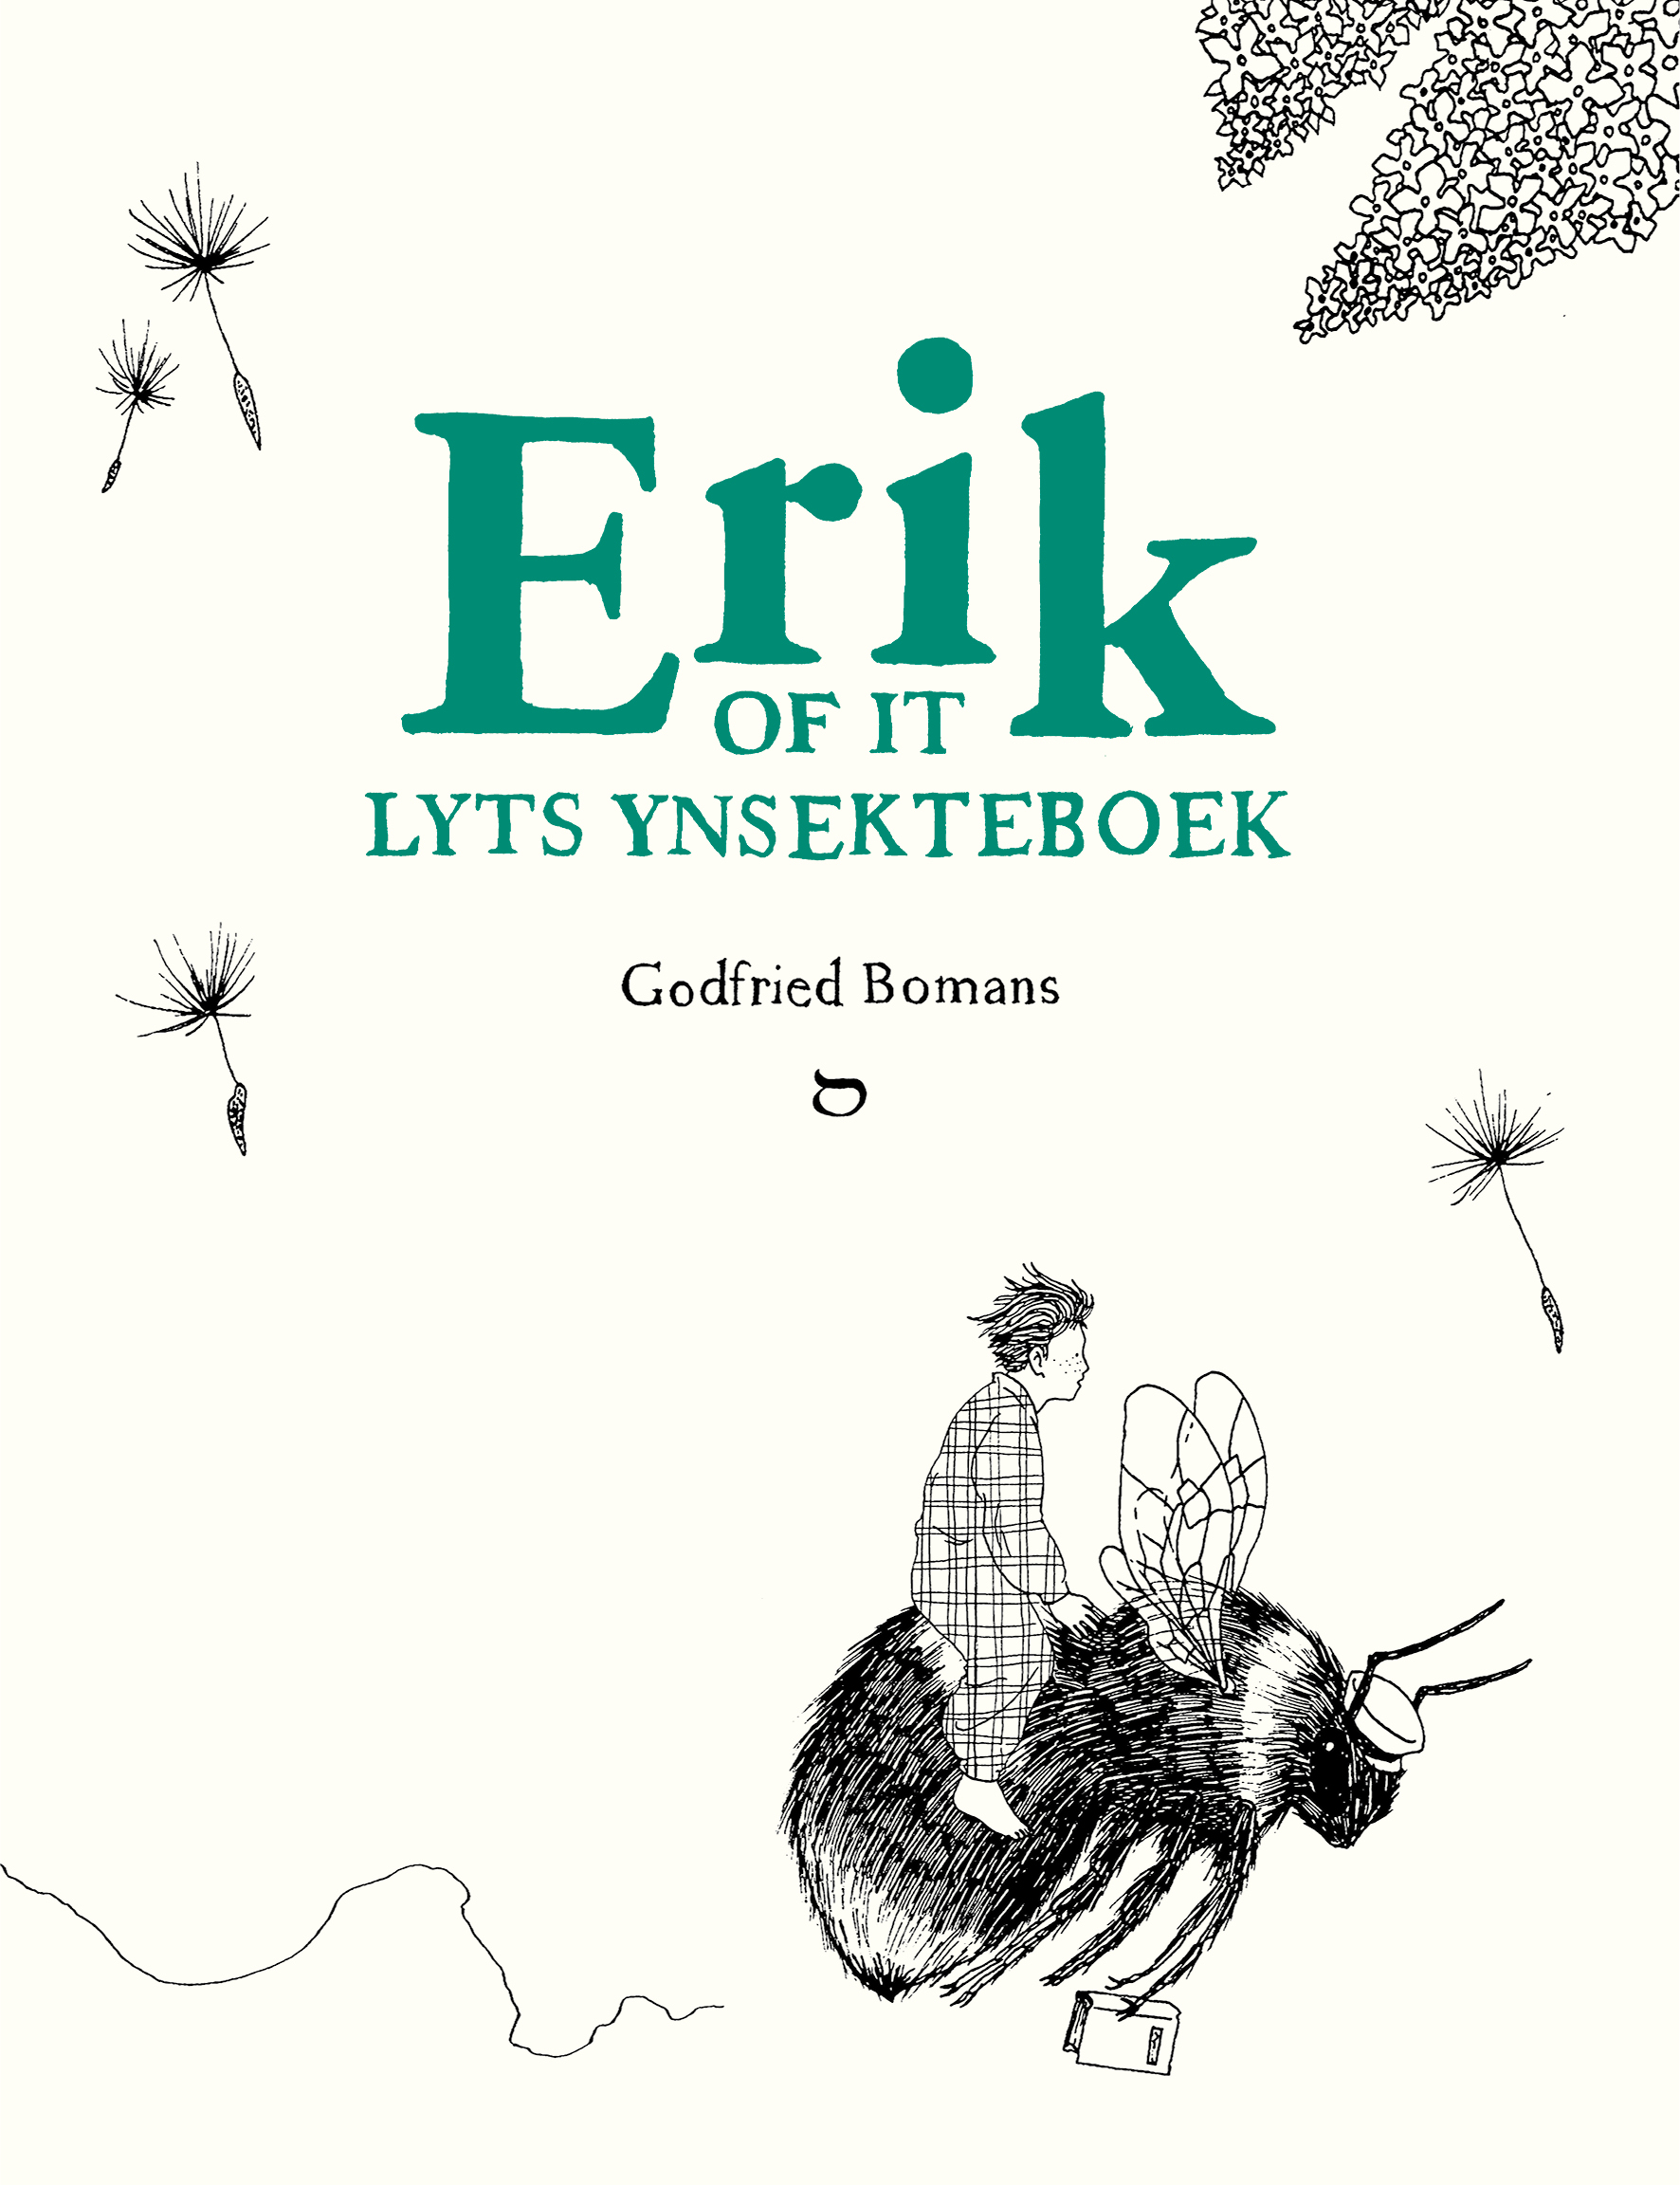 Erik of it lyts ynsekteboek